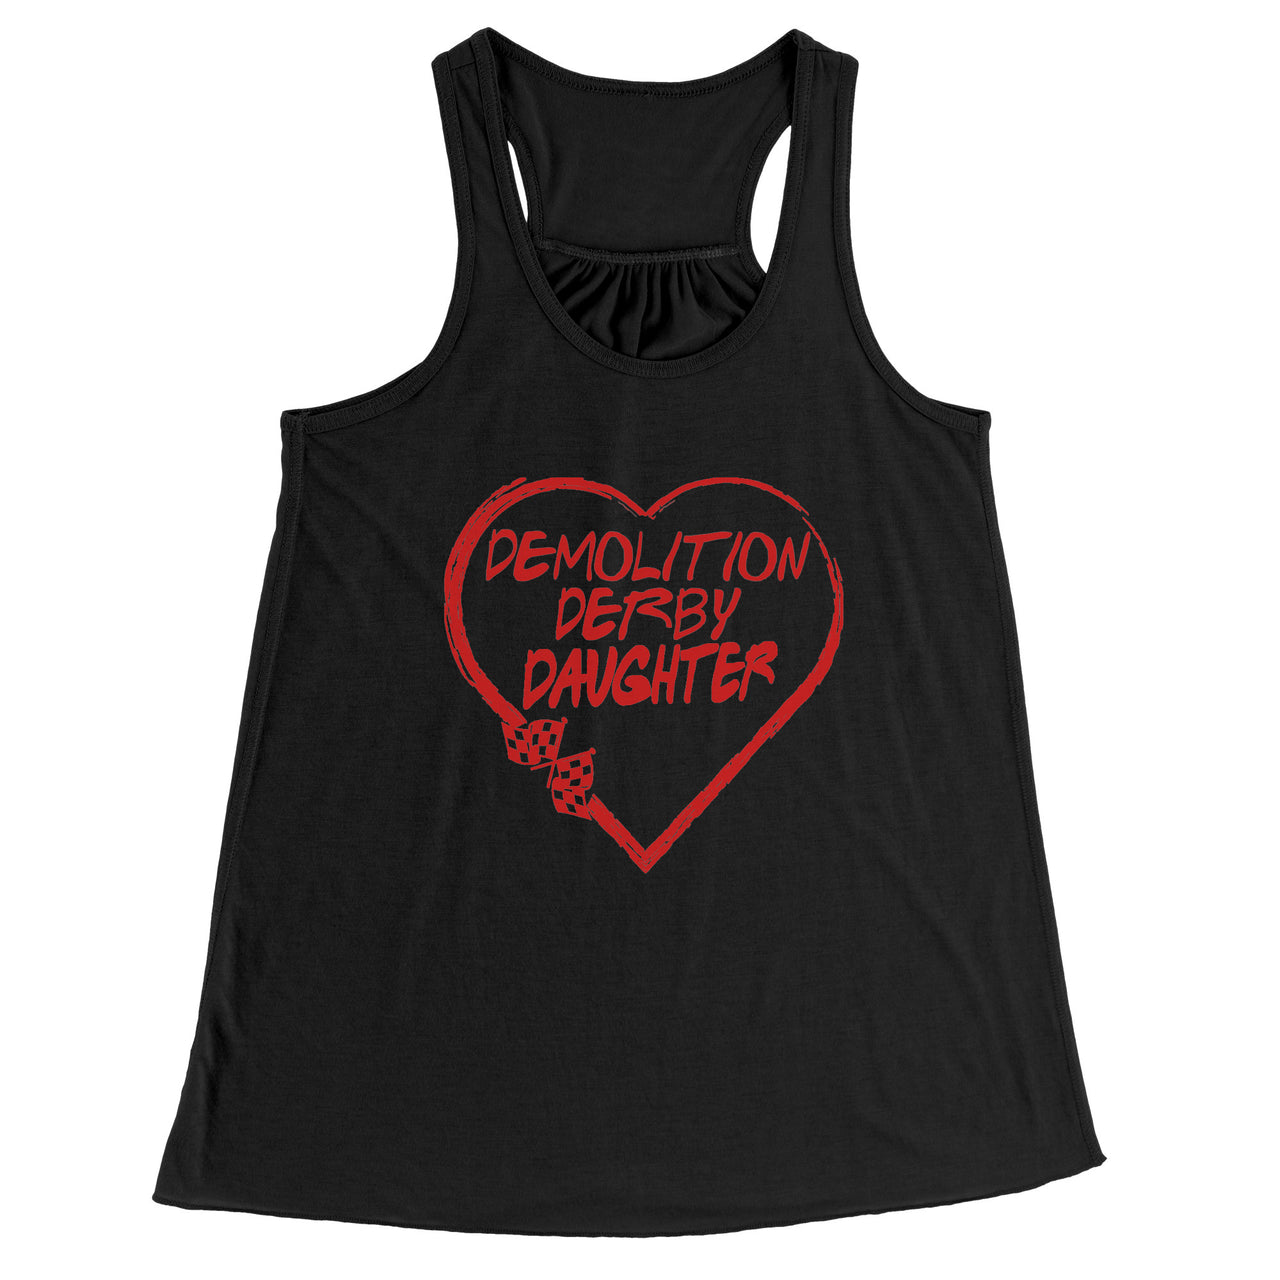 Demolition Derby Daughter Heart T-Shirts